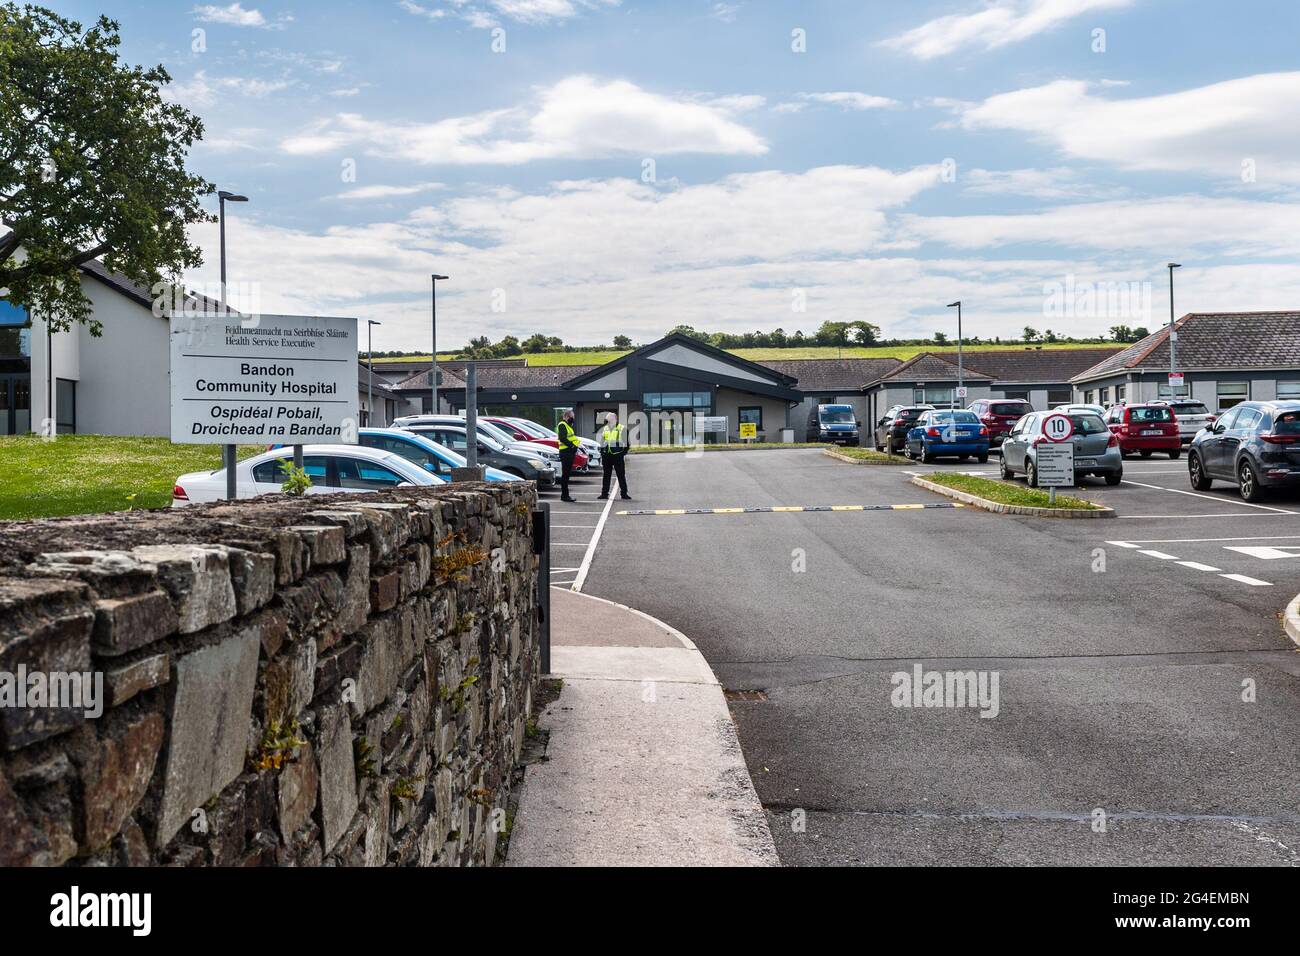 Bandon, West Cork, Irland. Juni 2021. Am Bandon Community Hospital wurde heute ein COVID-19 Testzentrum eröffnet. Das Testzentrum ist heute und morgen geöffnet, um von 11:00 bis 19:00 Uhr begehbare Tests ohne Terminvereinbarung zu ermöglichen. Quelle: AG News/Alamy Live News Stockfoto